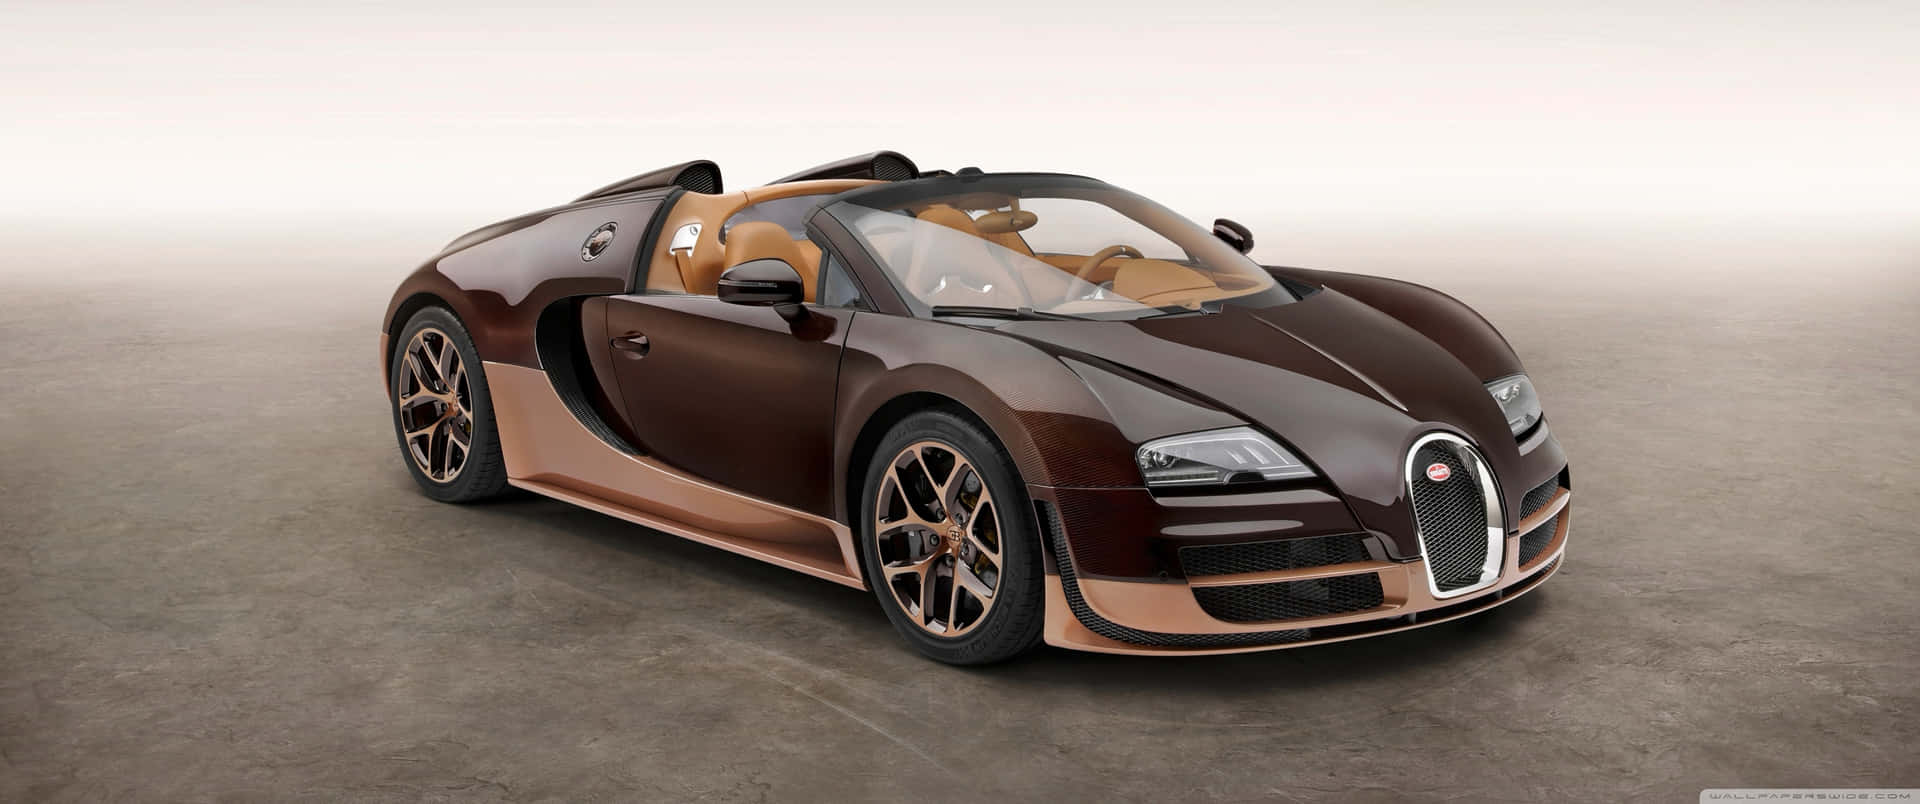 Erlebensie Luxus Und Leistung Mit Dem Besten Bugatti.